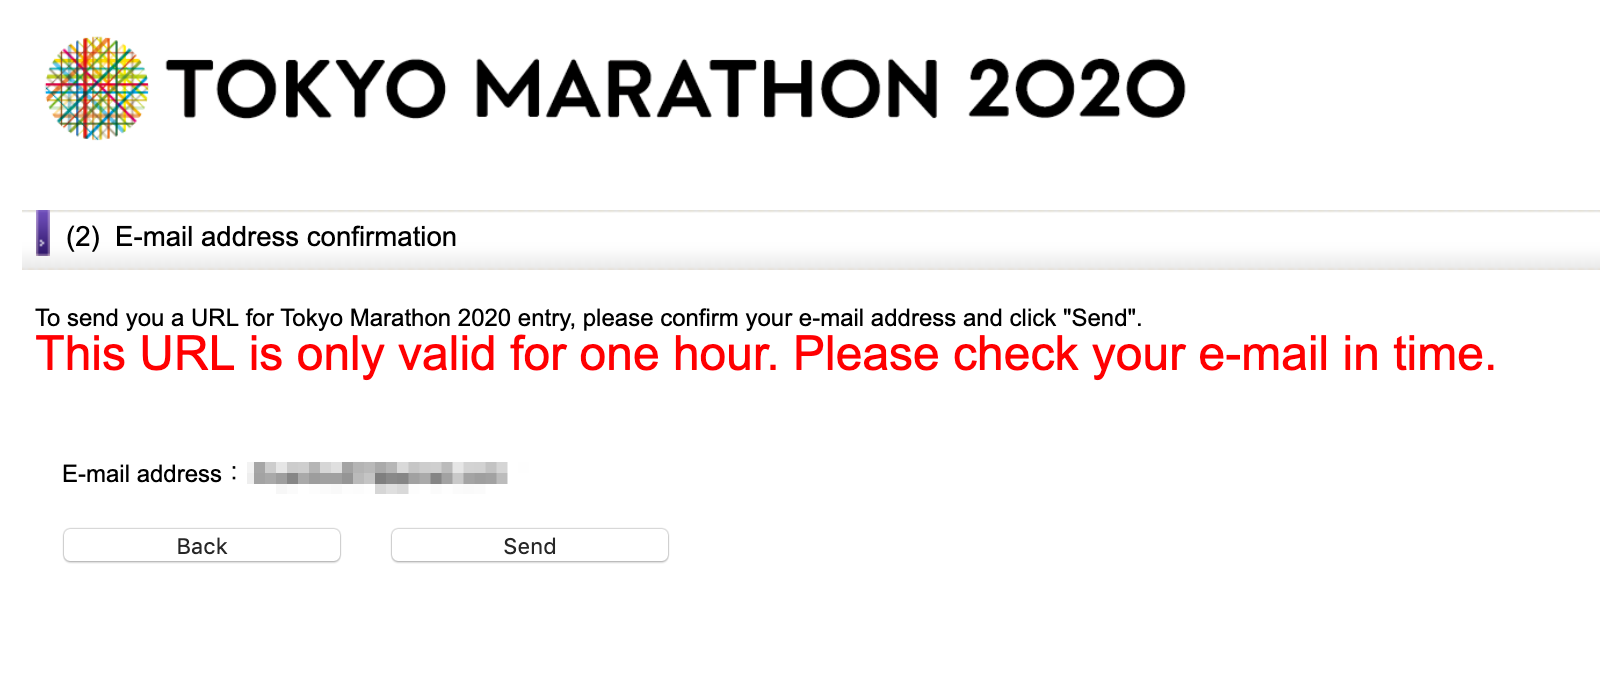 Hướng dẫn đăng ký xổ số dành suất tham gia Tokyo Marathon 2020 - dang ky tokyo marathon 2020 2